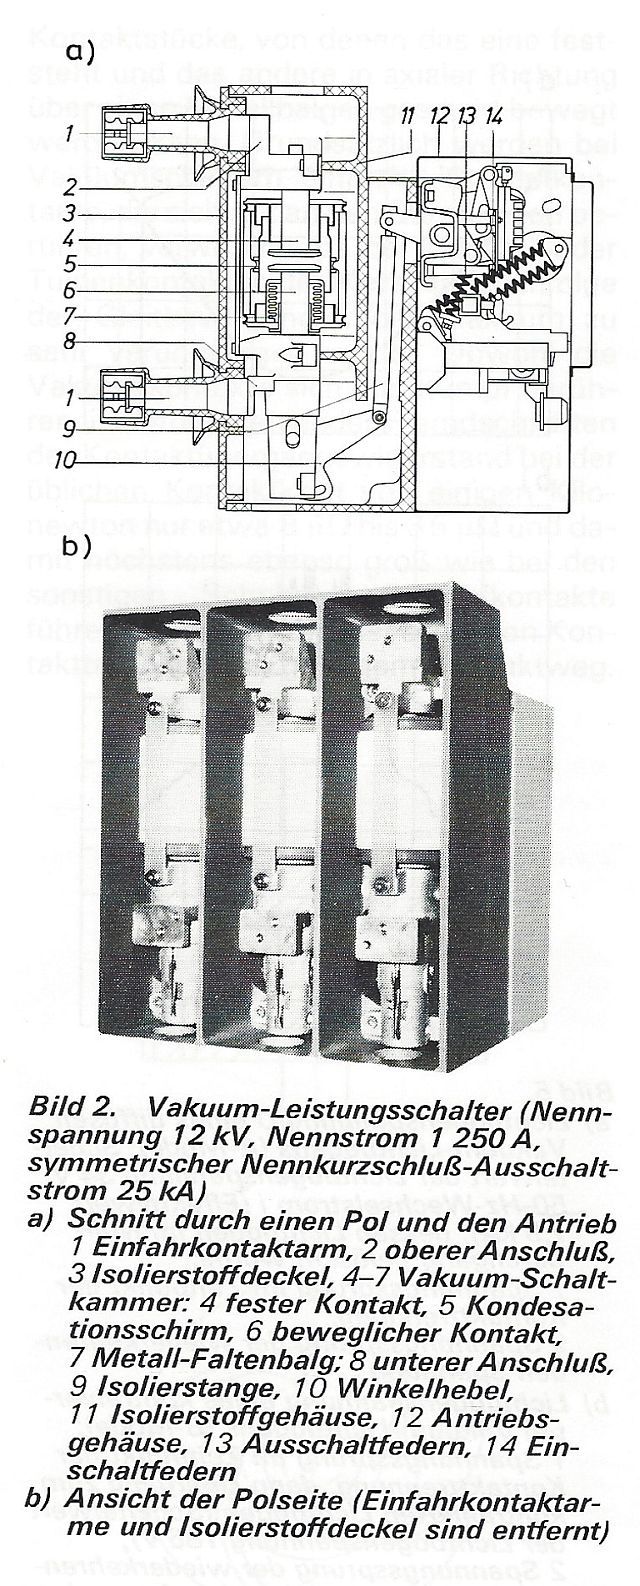 Bild 2. Vakuum-Leistungsschalter